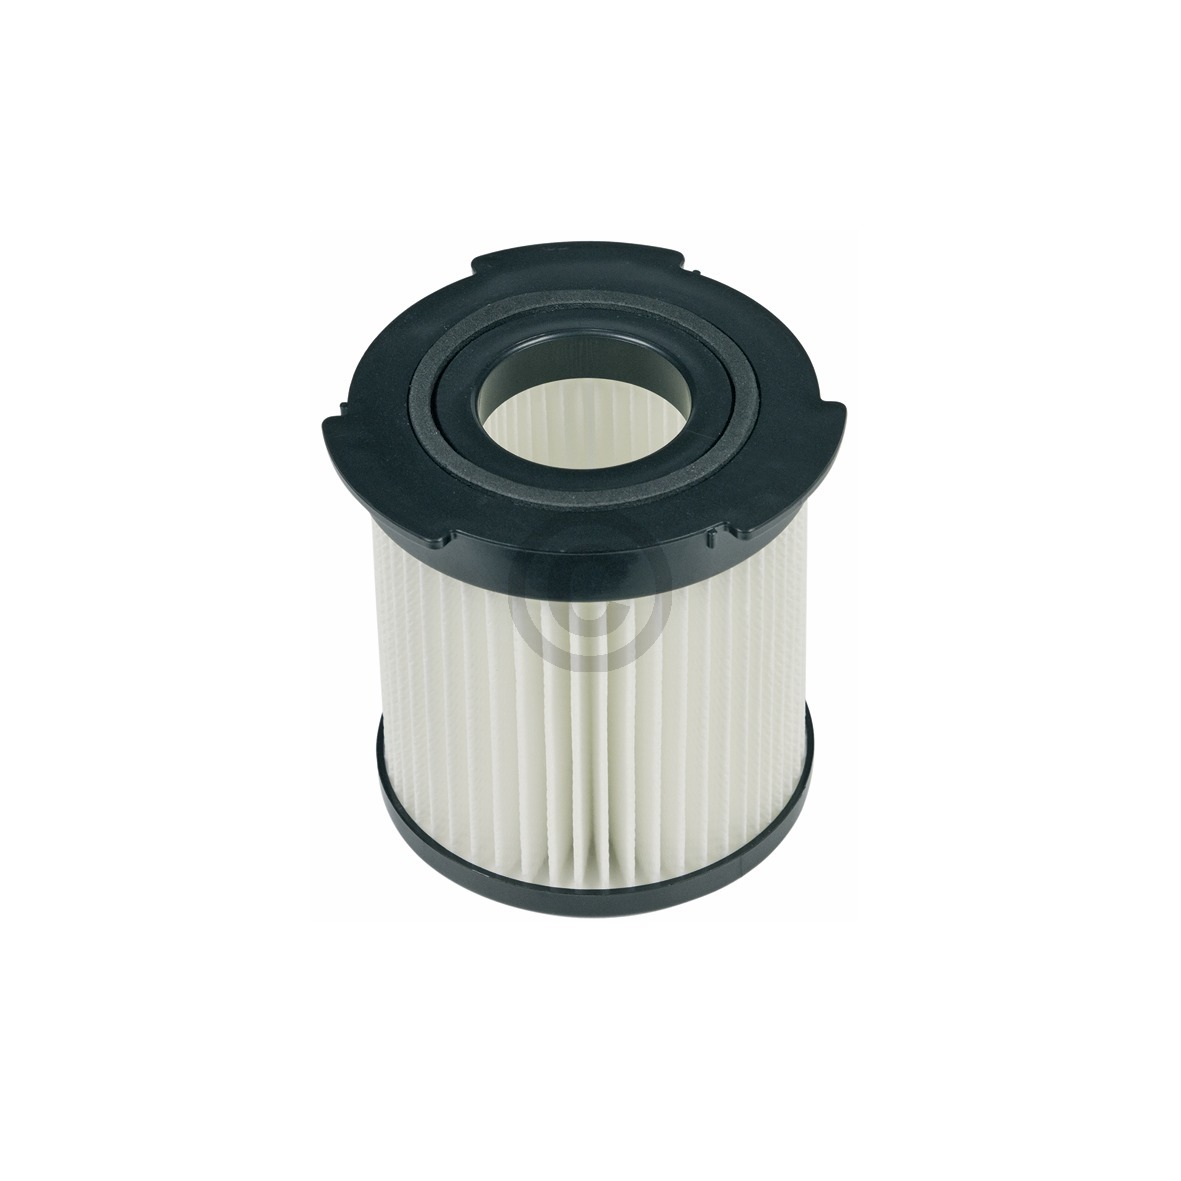 Abluftfilter Filterzylinder + 2 x Mikrofilter AEG AEF20 900196668-9 für Staubsauger (KD-9001966689)